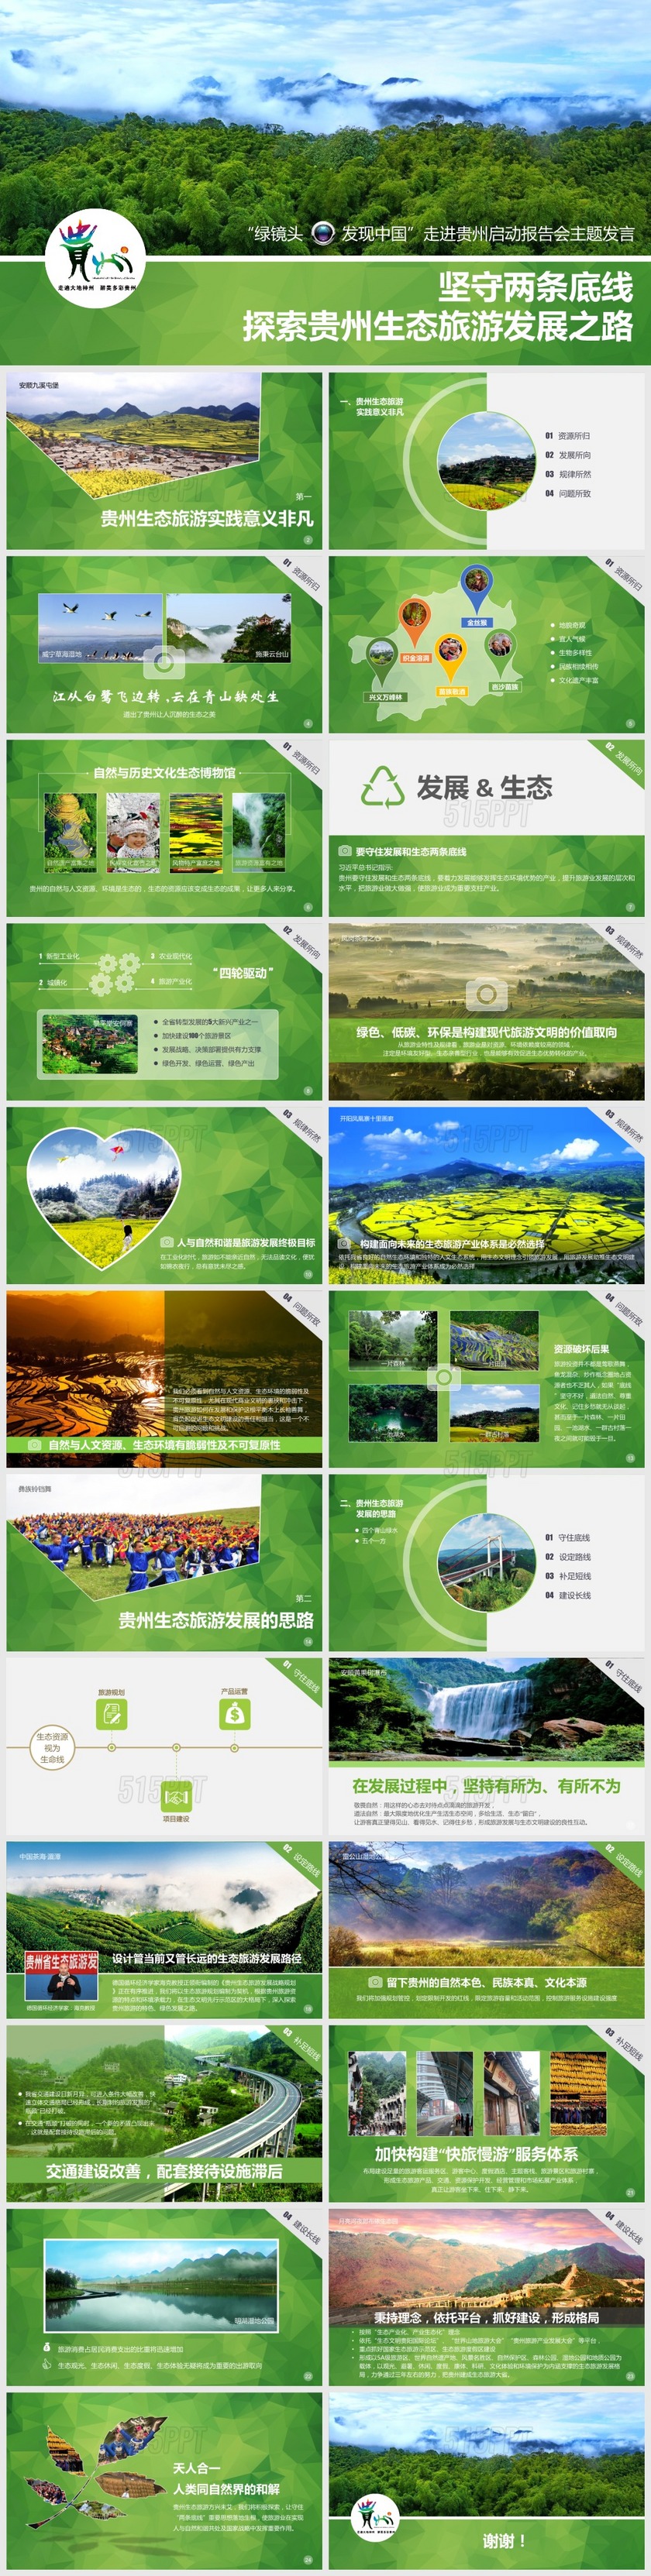 走进贵州探索贵州生态旅游发展之路报告会PPT模板